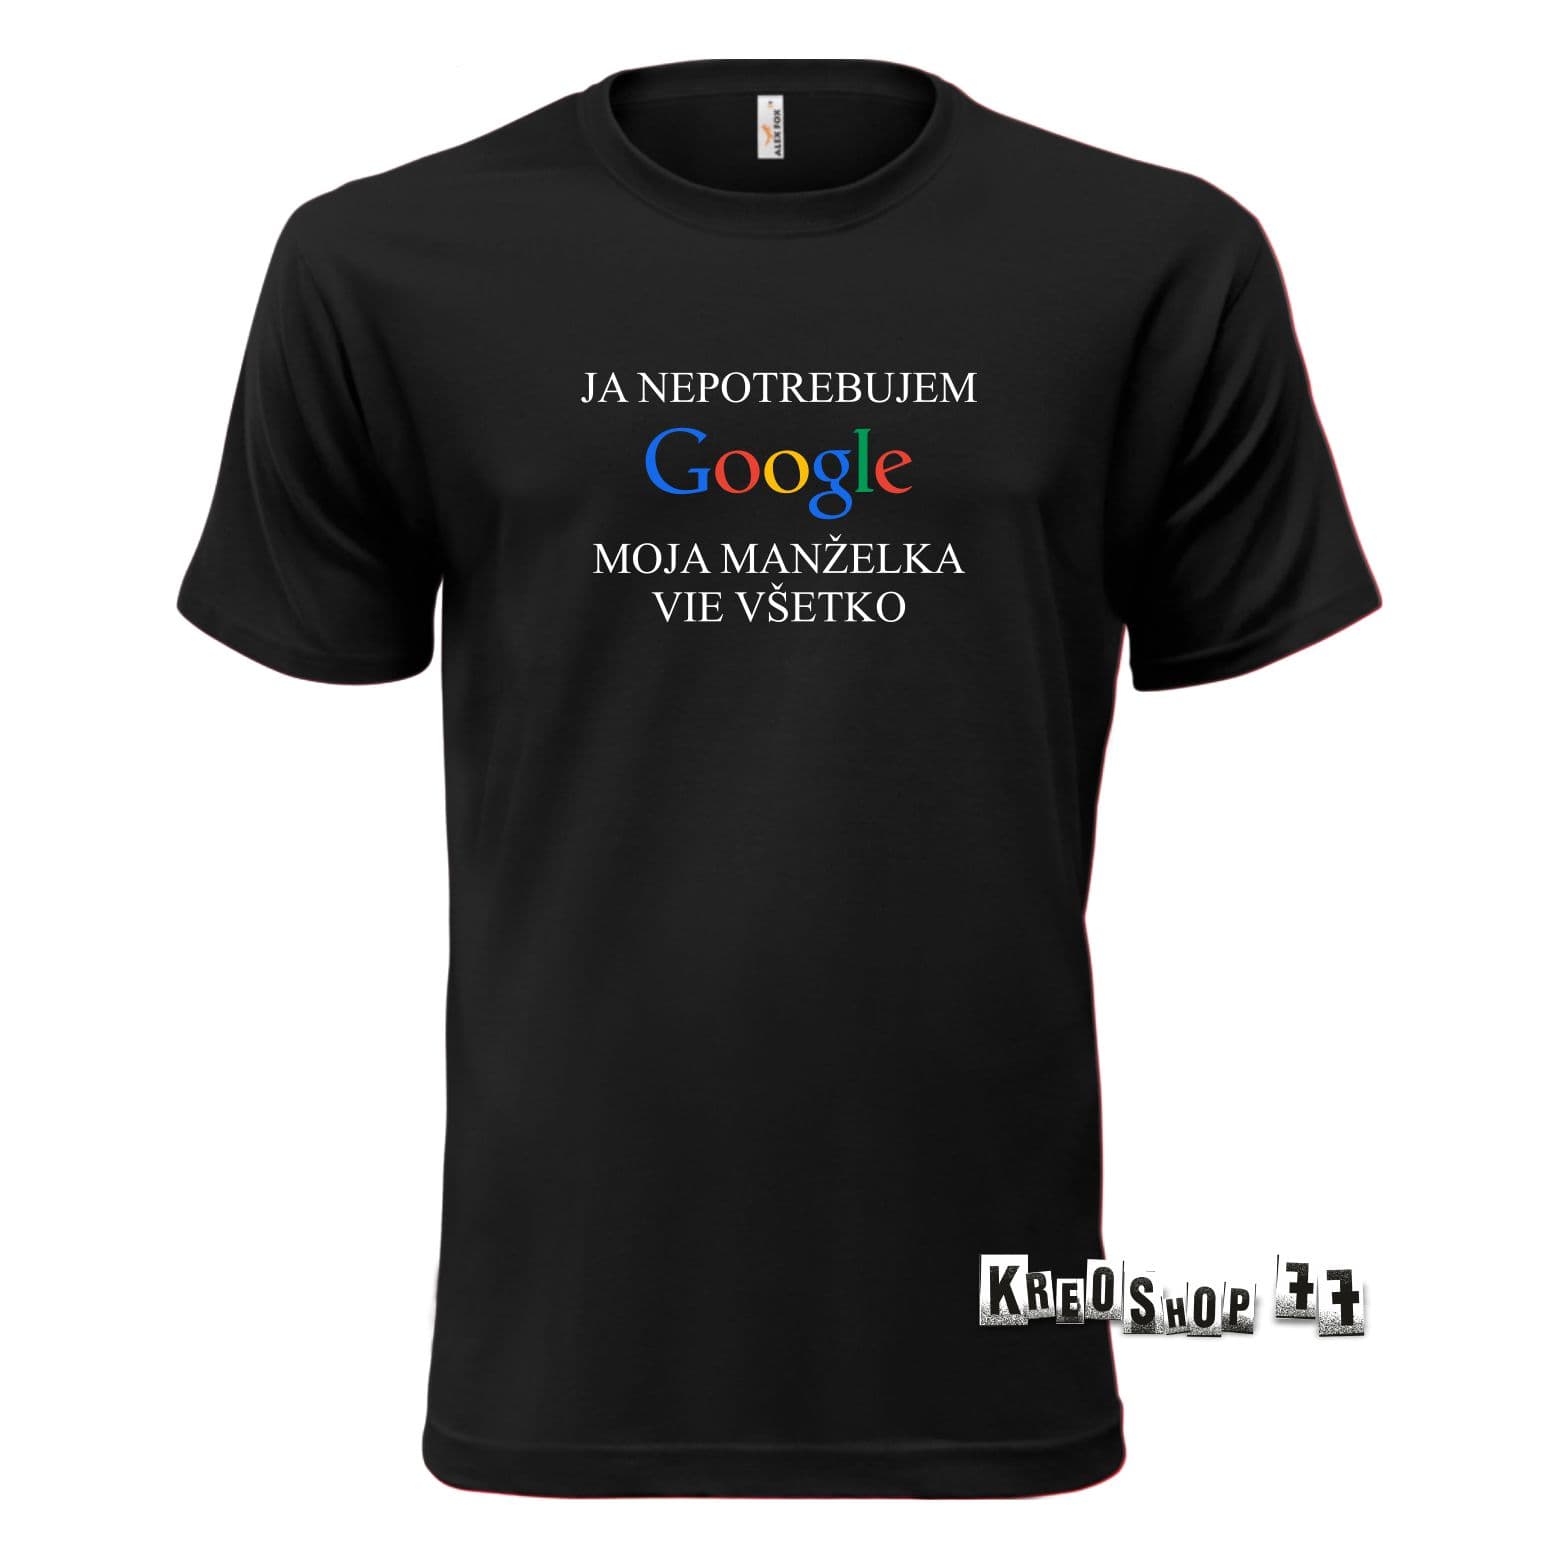 Tričko - Ja nepotrebujem Google, moja manželka vie všetko - Čierne